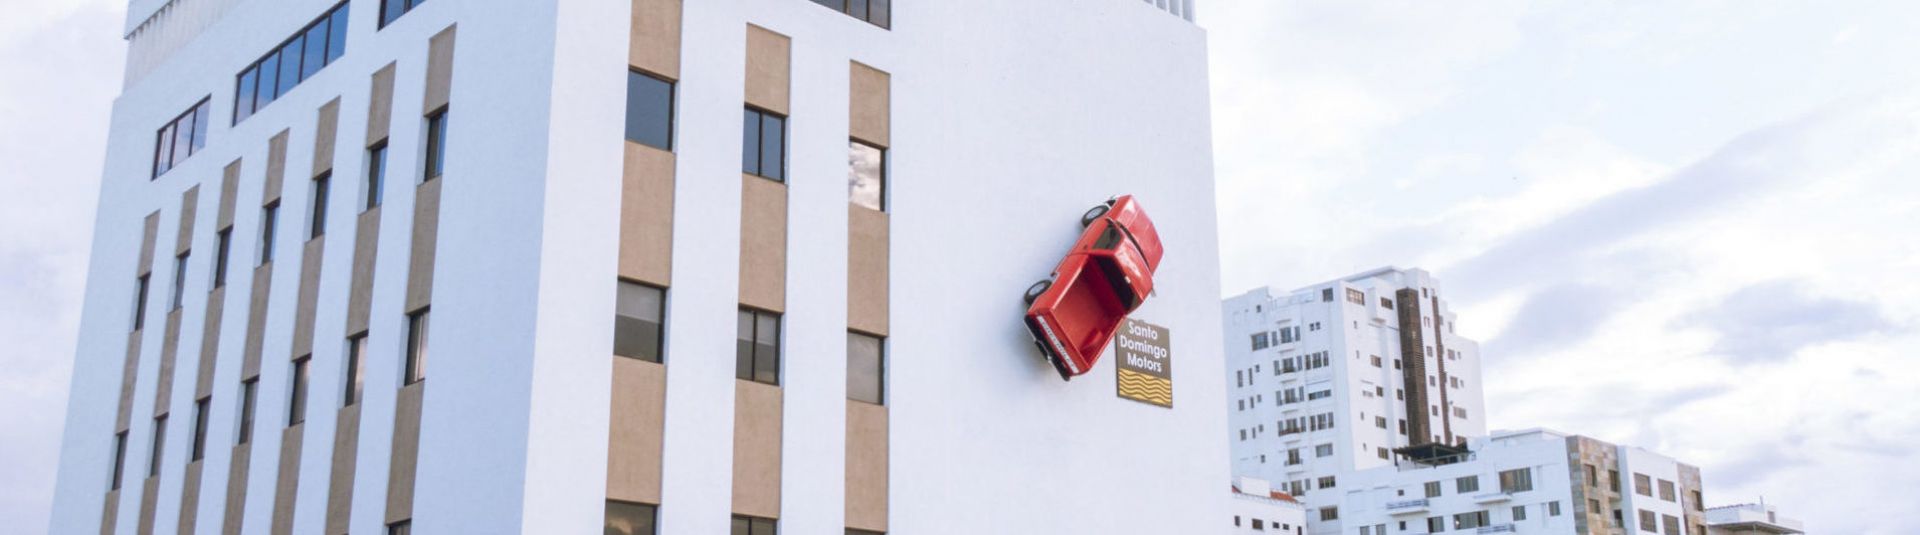 Reinstalan “Camioneta Roja” en Edificio Ambar